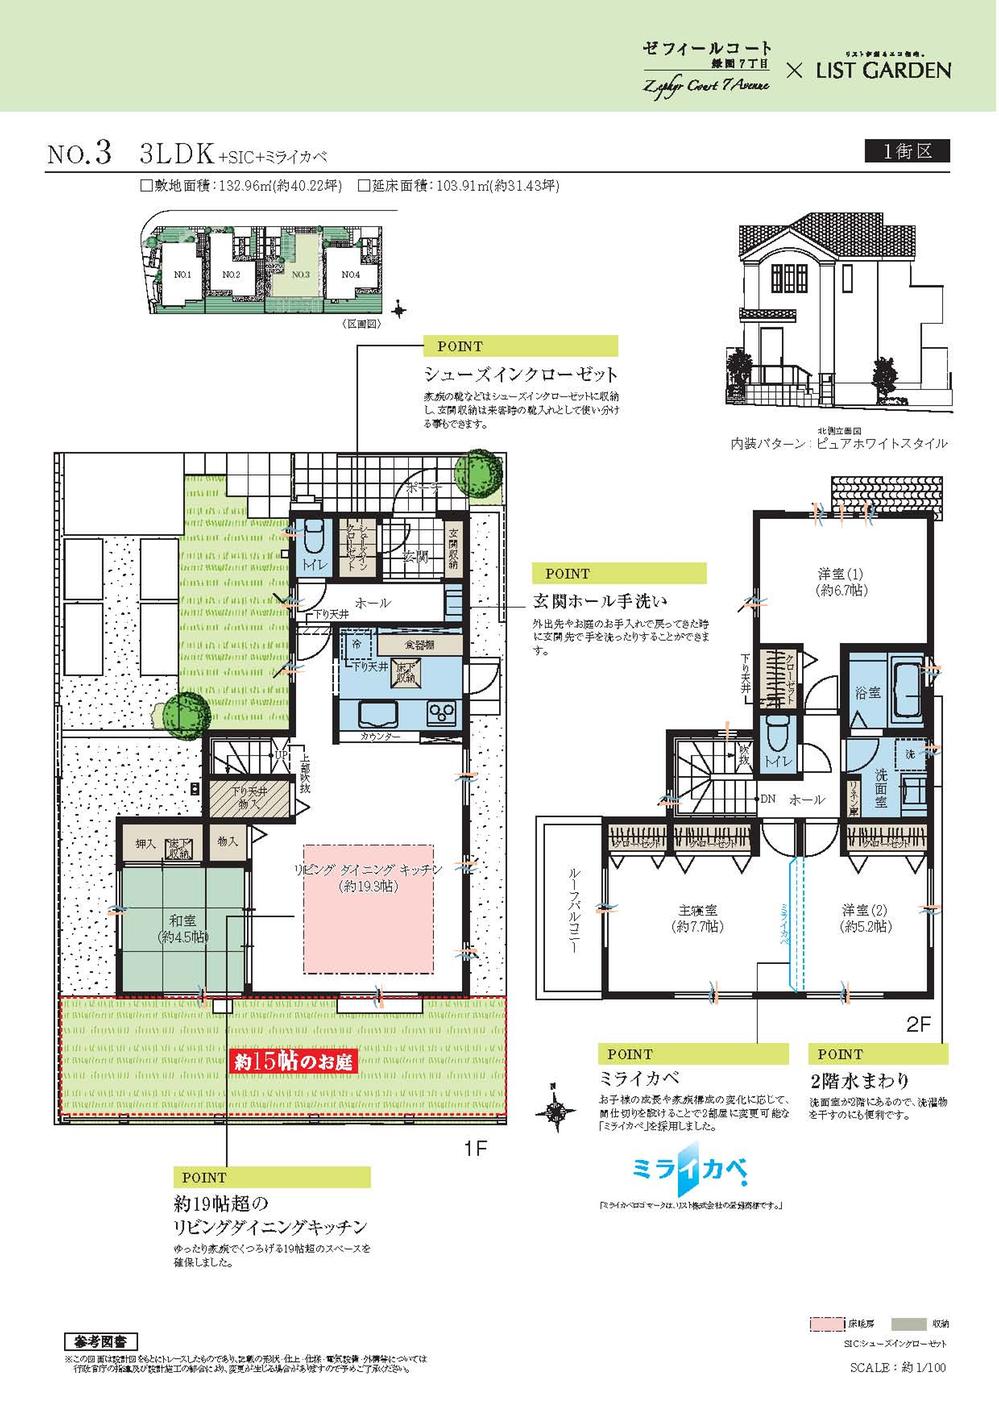 Floor plan. Price TBD , 3LDK, Land area 132.96 sq m , Building area 103.91 sq m